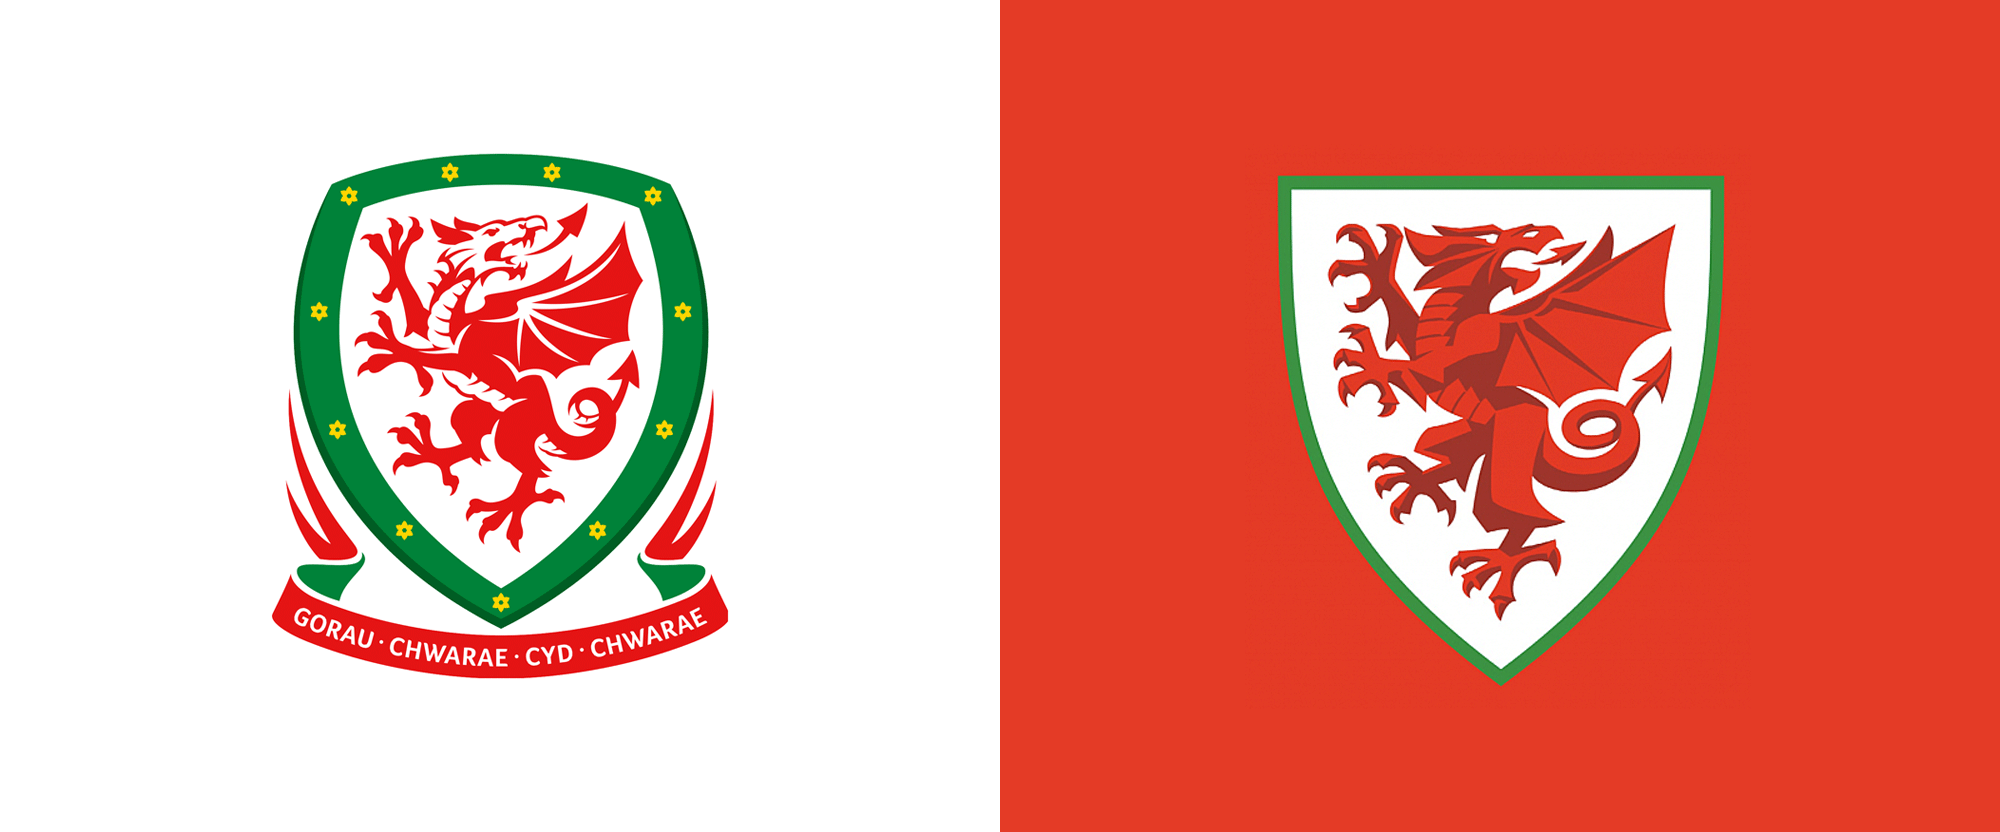 威尔士足球协会龙标志设计